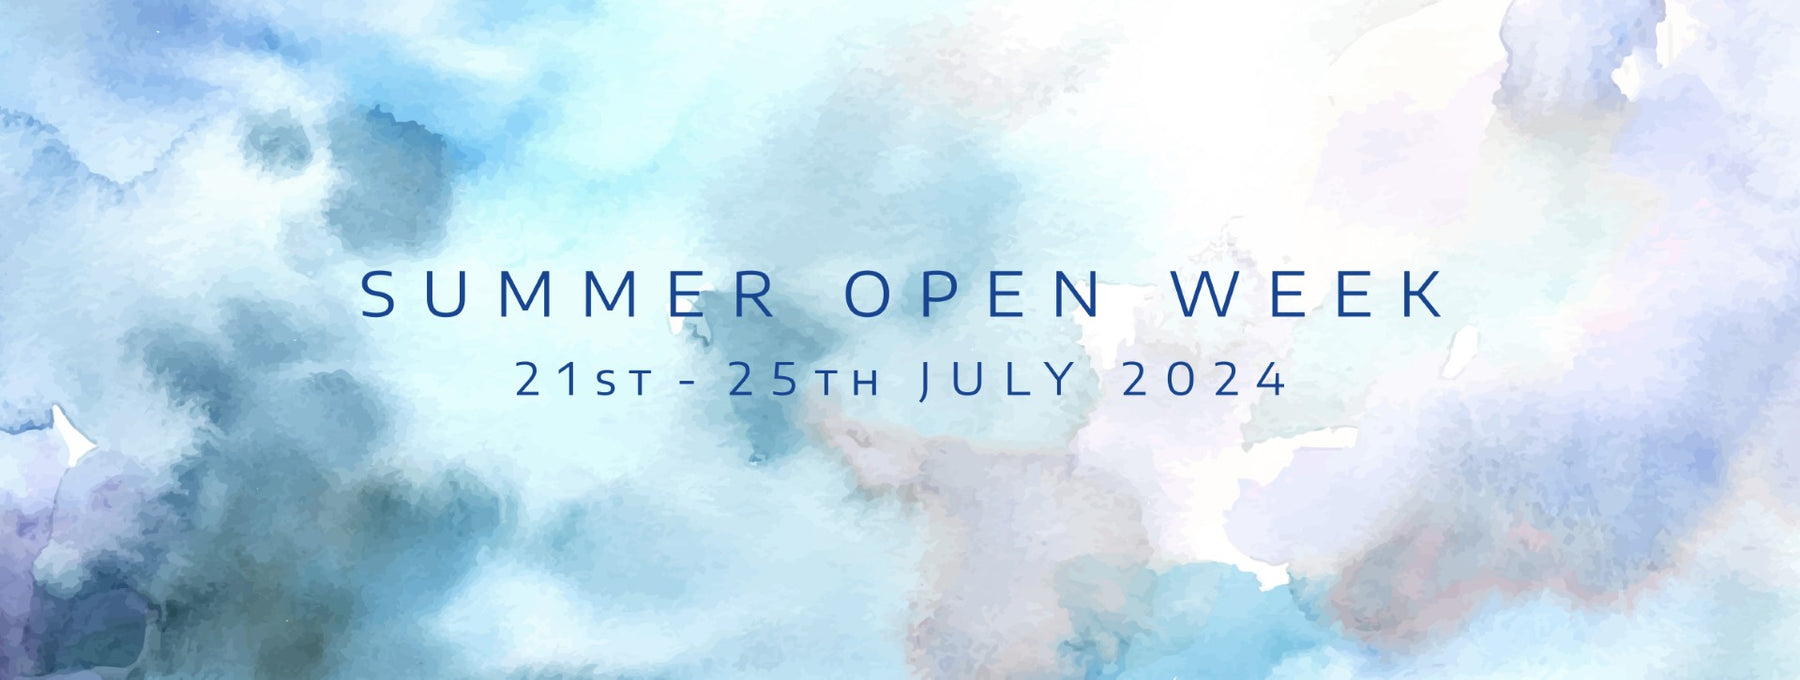 Summer Open Week 21st - 25th July 2024